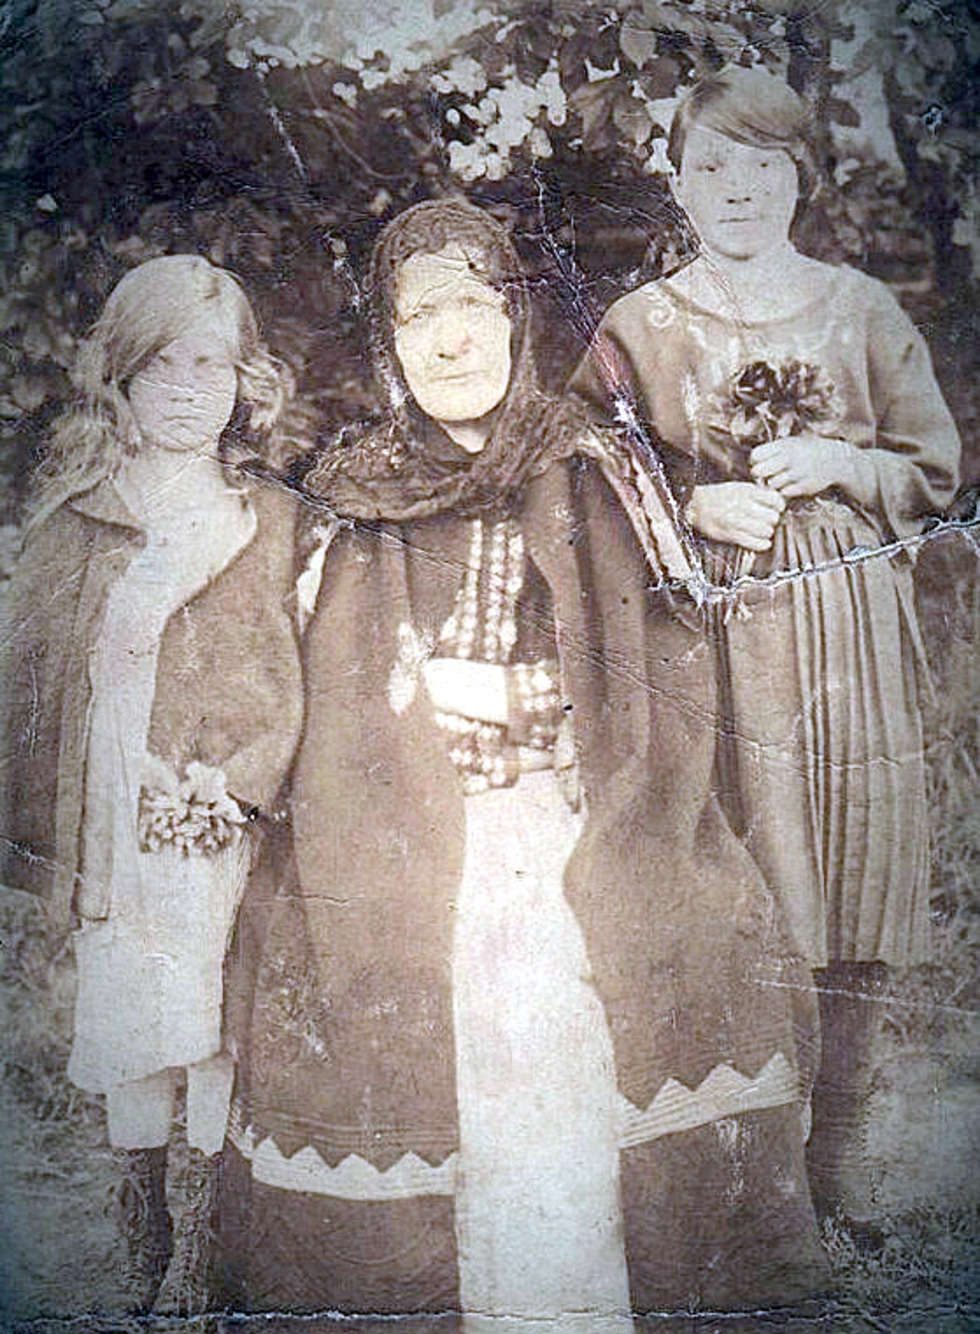  <p>Rok 1895. Po środku Maria Buszko (babcia Bazylego Buszko) urodzona ok. 1845</p>
<p>&nbsp;</p>